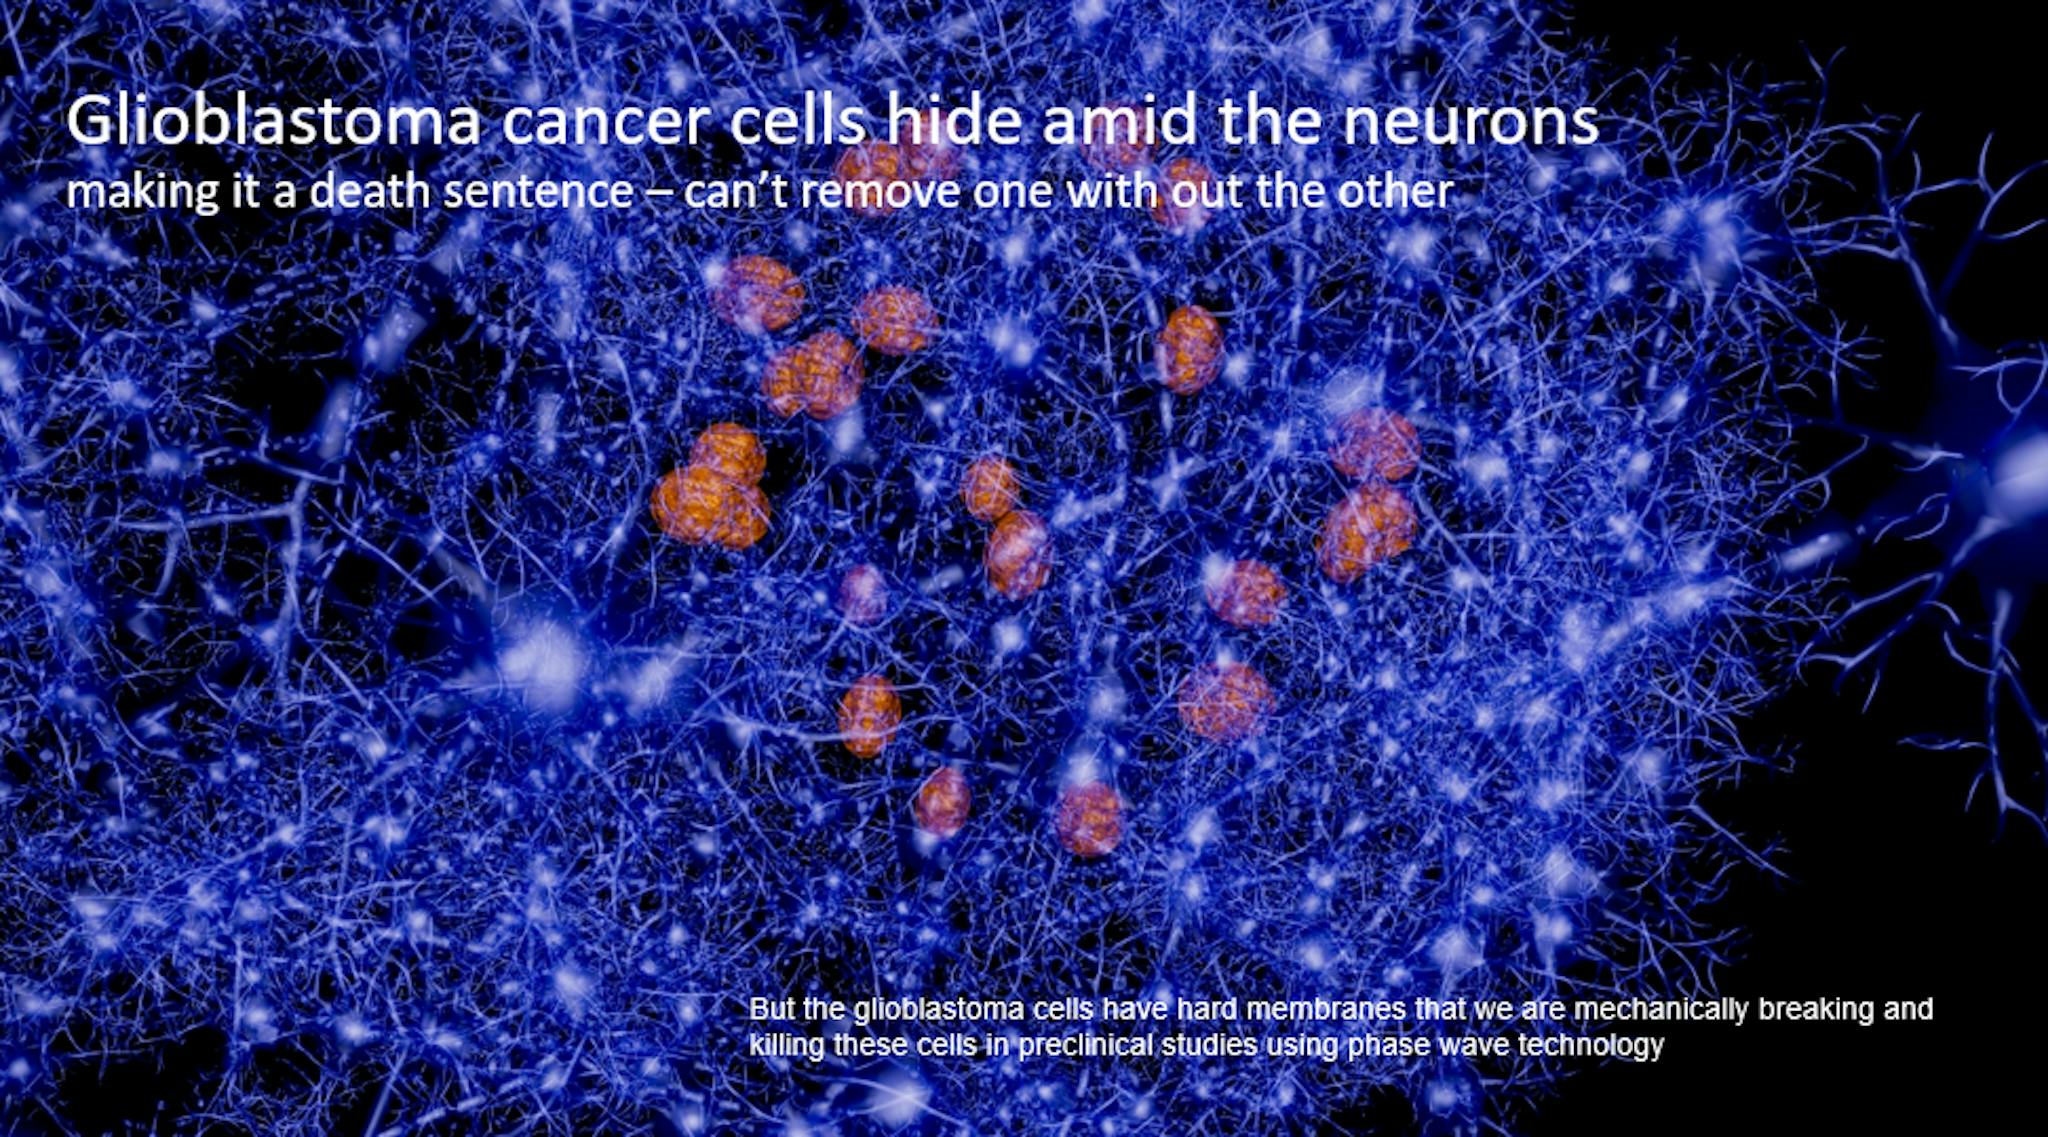 tế bào u nguyên bào thần kinh đệm, , nguồn: https://docs.google.com/document/d/13b2paodoTty7Dk70OEZblaz_ZoQpmSui2HaNrVDOjTc